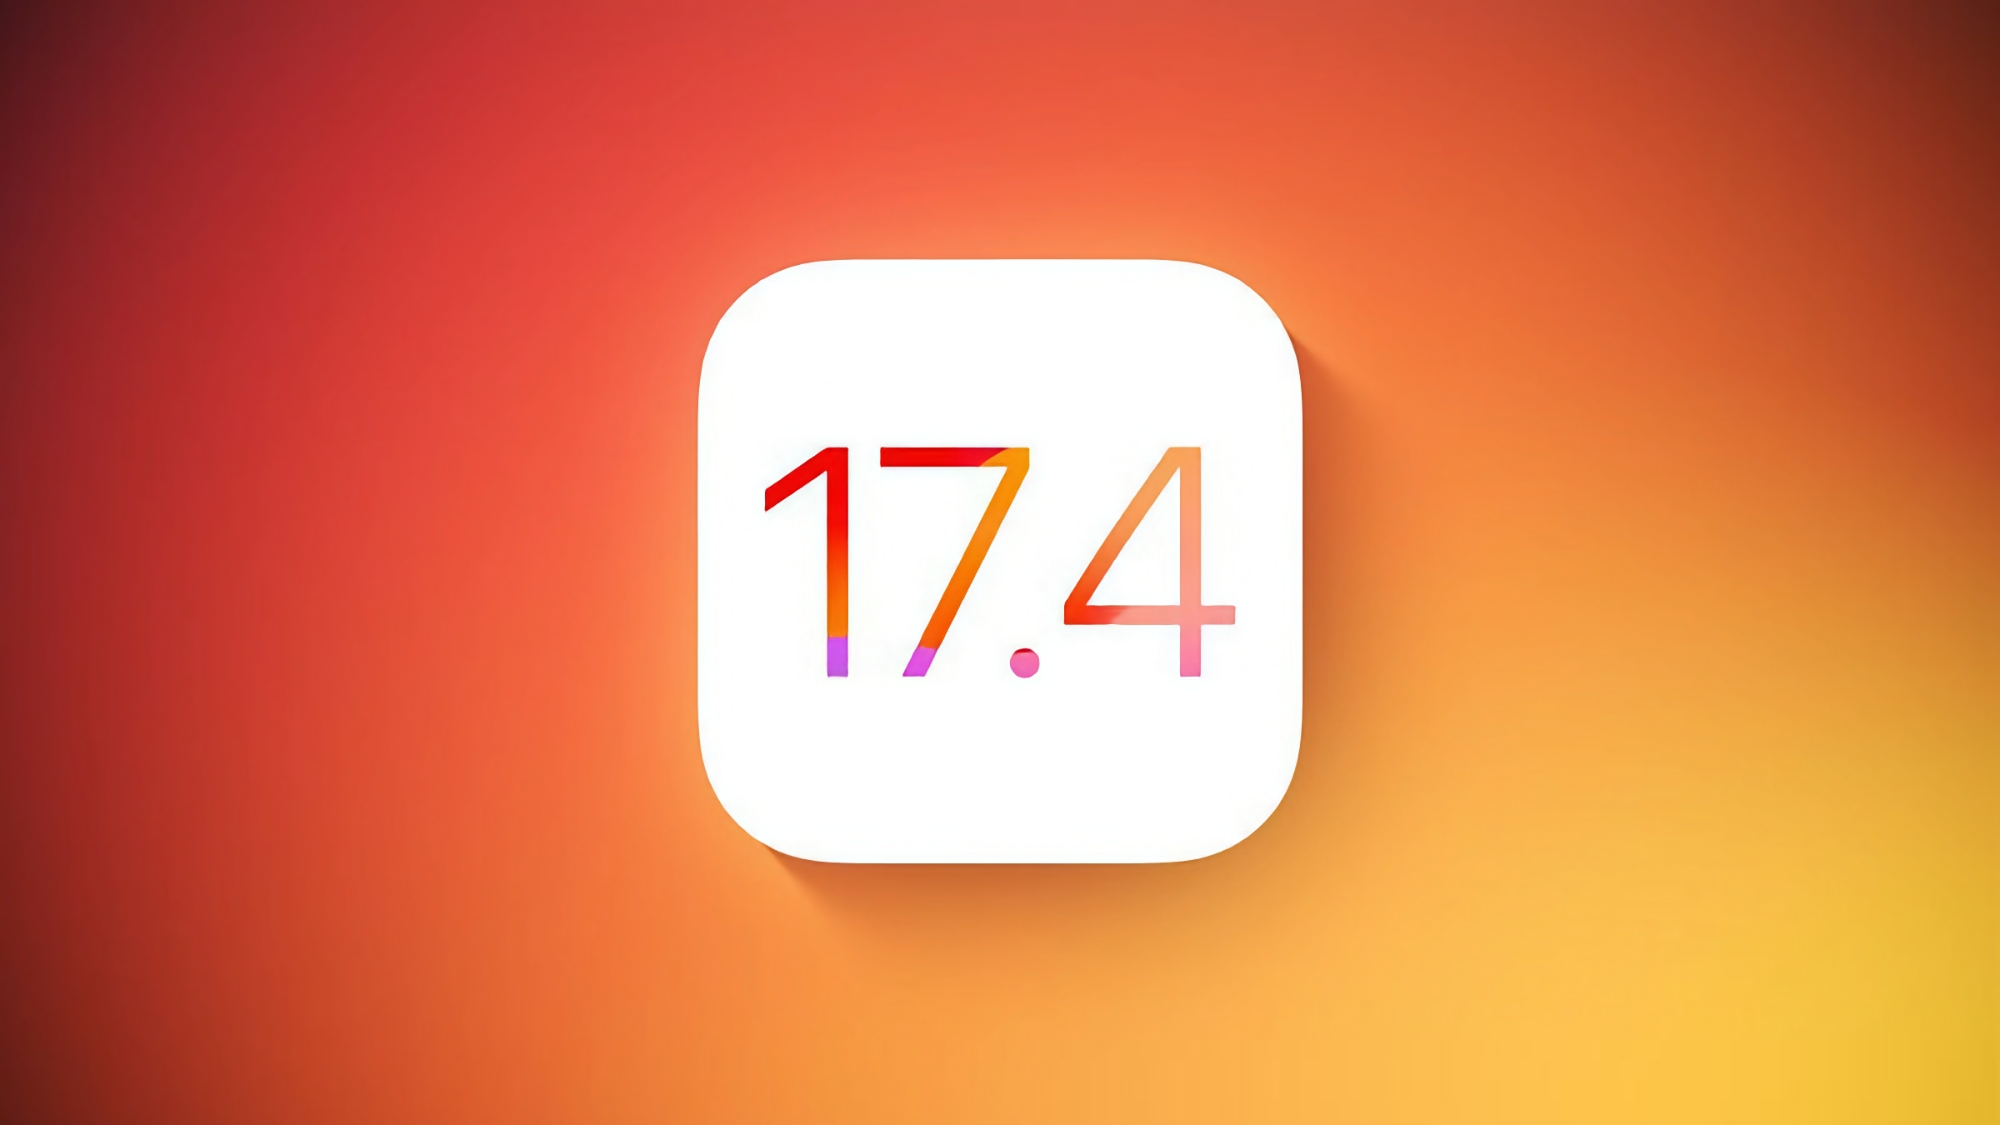 Dla deweloperów: Apple udostępniło trzecią wersję beta systemu iOS 17.4